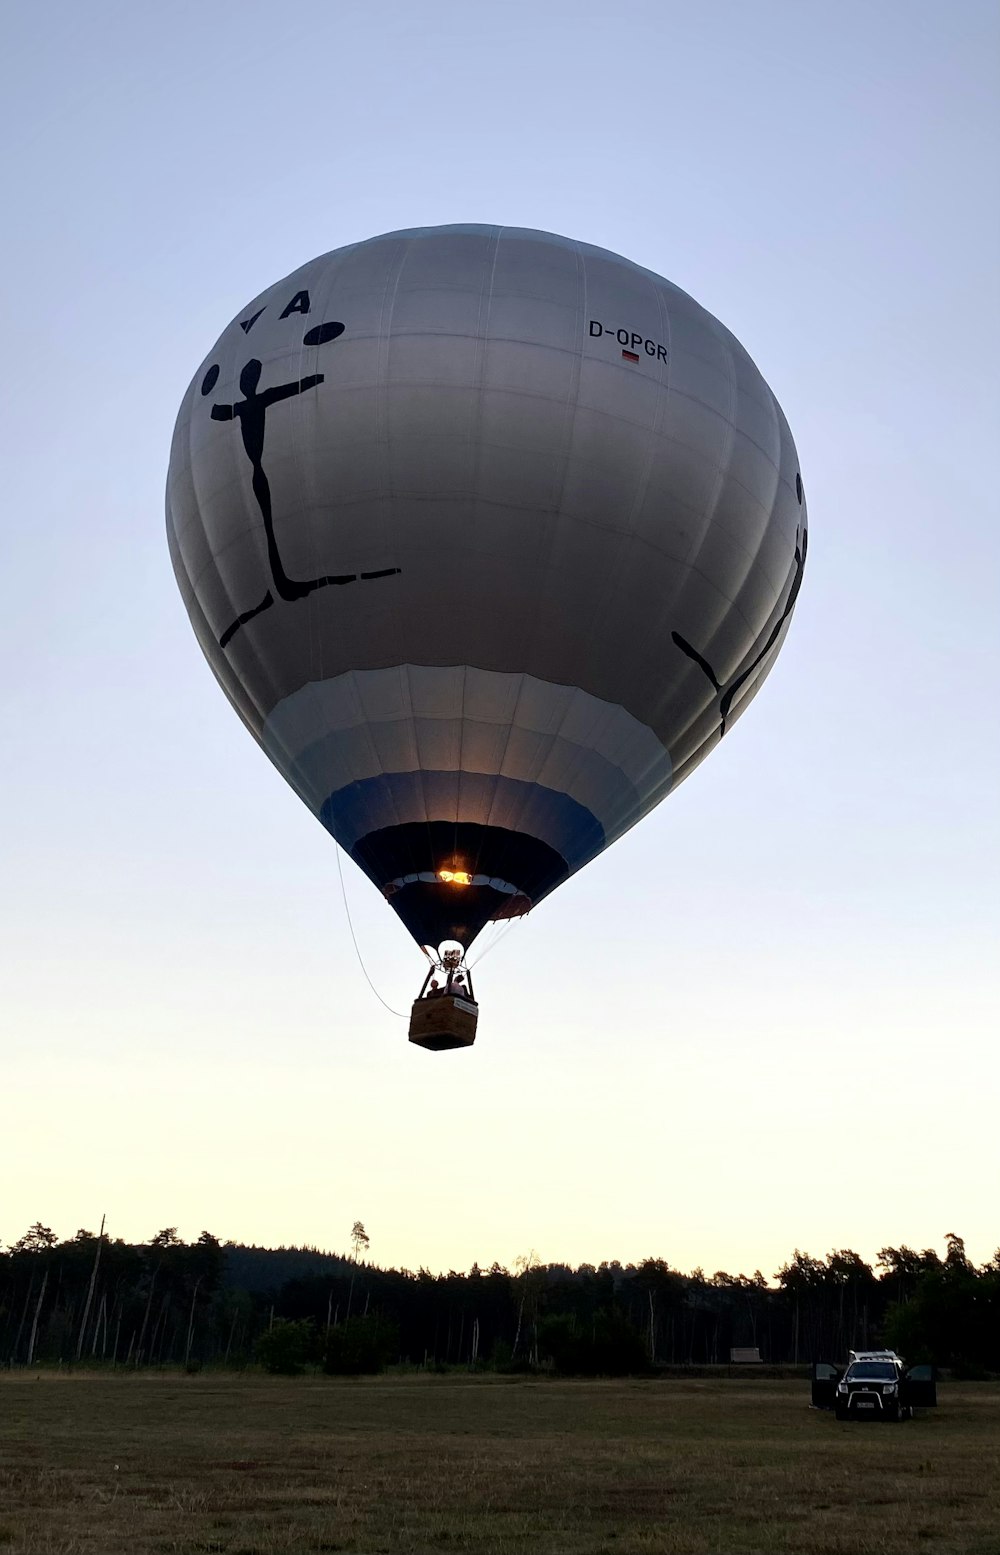 a large white hot air balloon